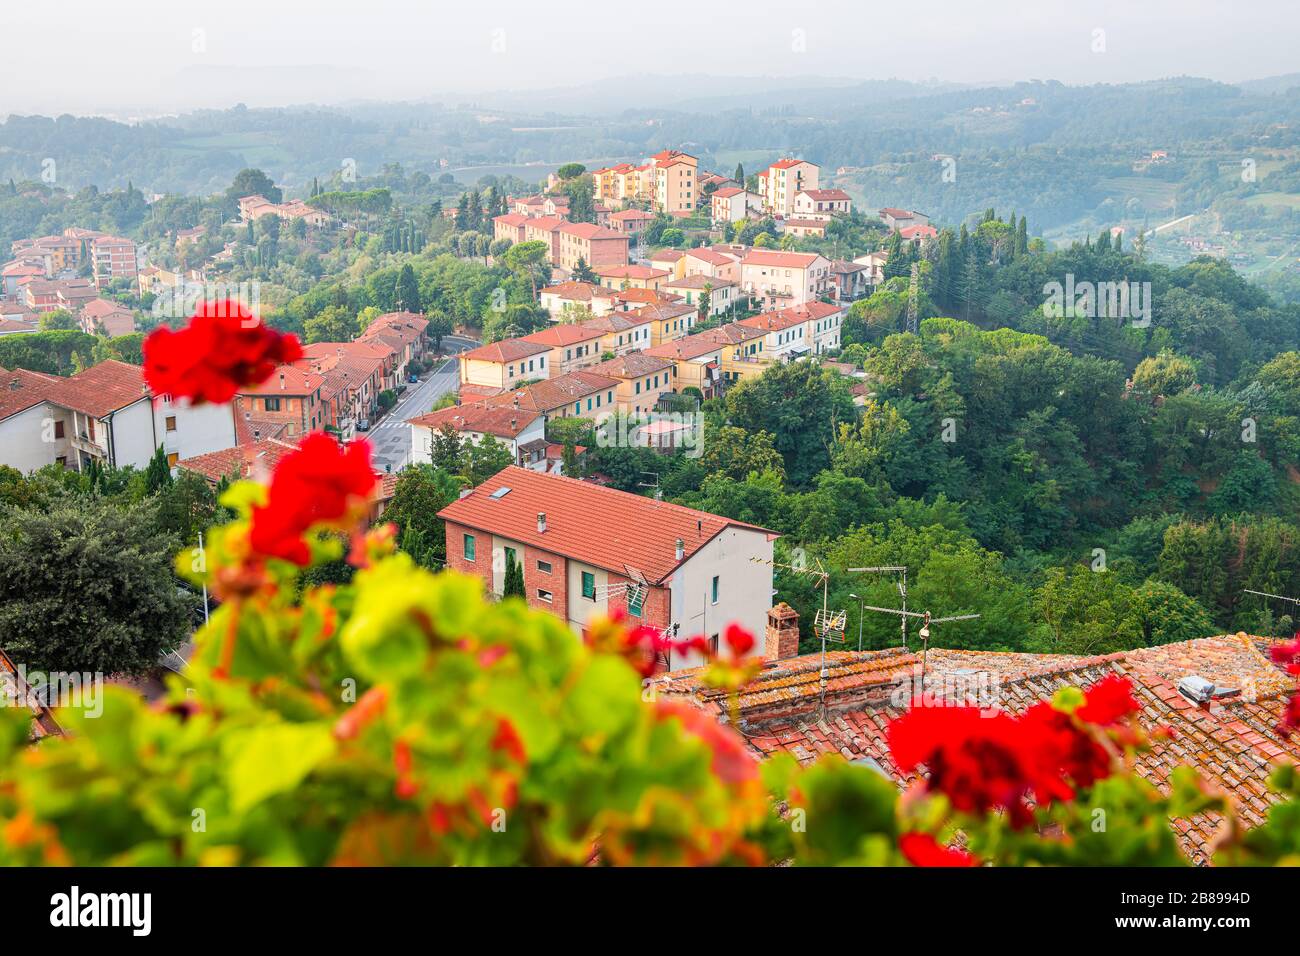 Chiusi Scalo beherbergt in der Toskana, in der Stadt Italiens Stadtbild und rote Geranienblüten im Garten im Vordergrund auf der Terrasse mit Blick auf die Landschaft Stockfoto